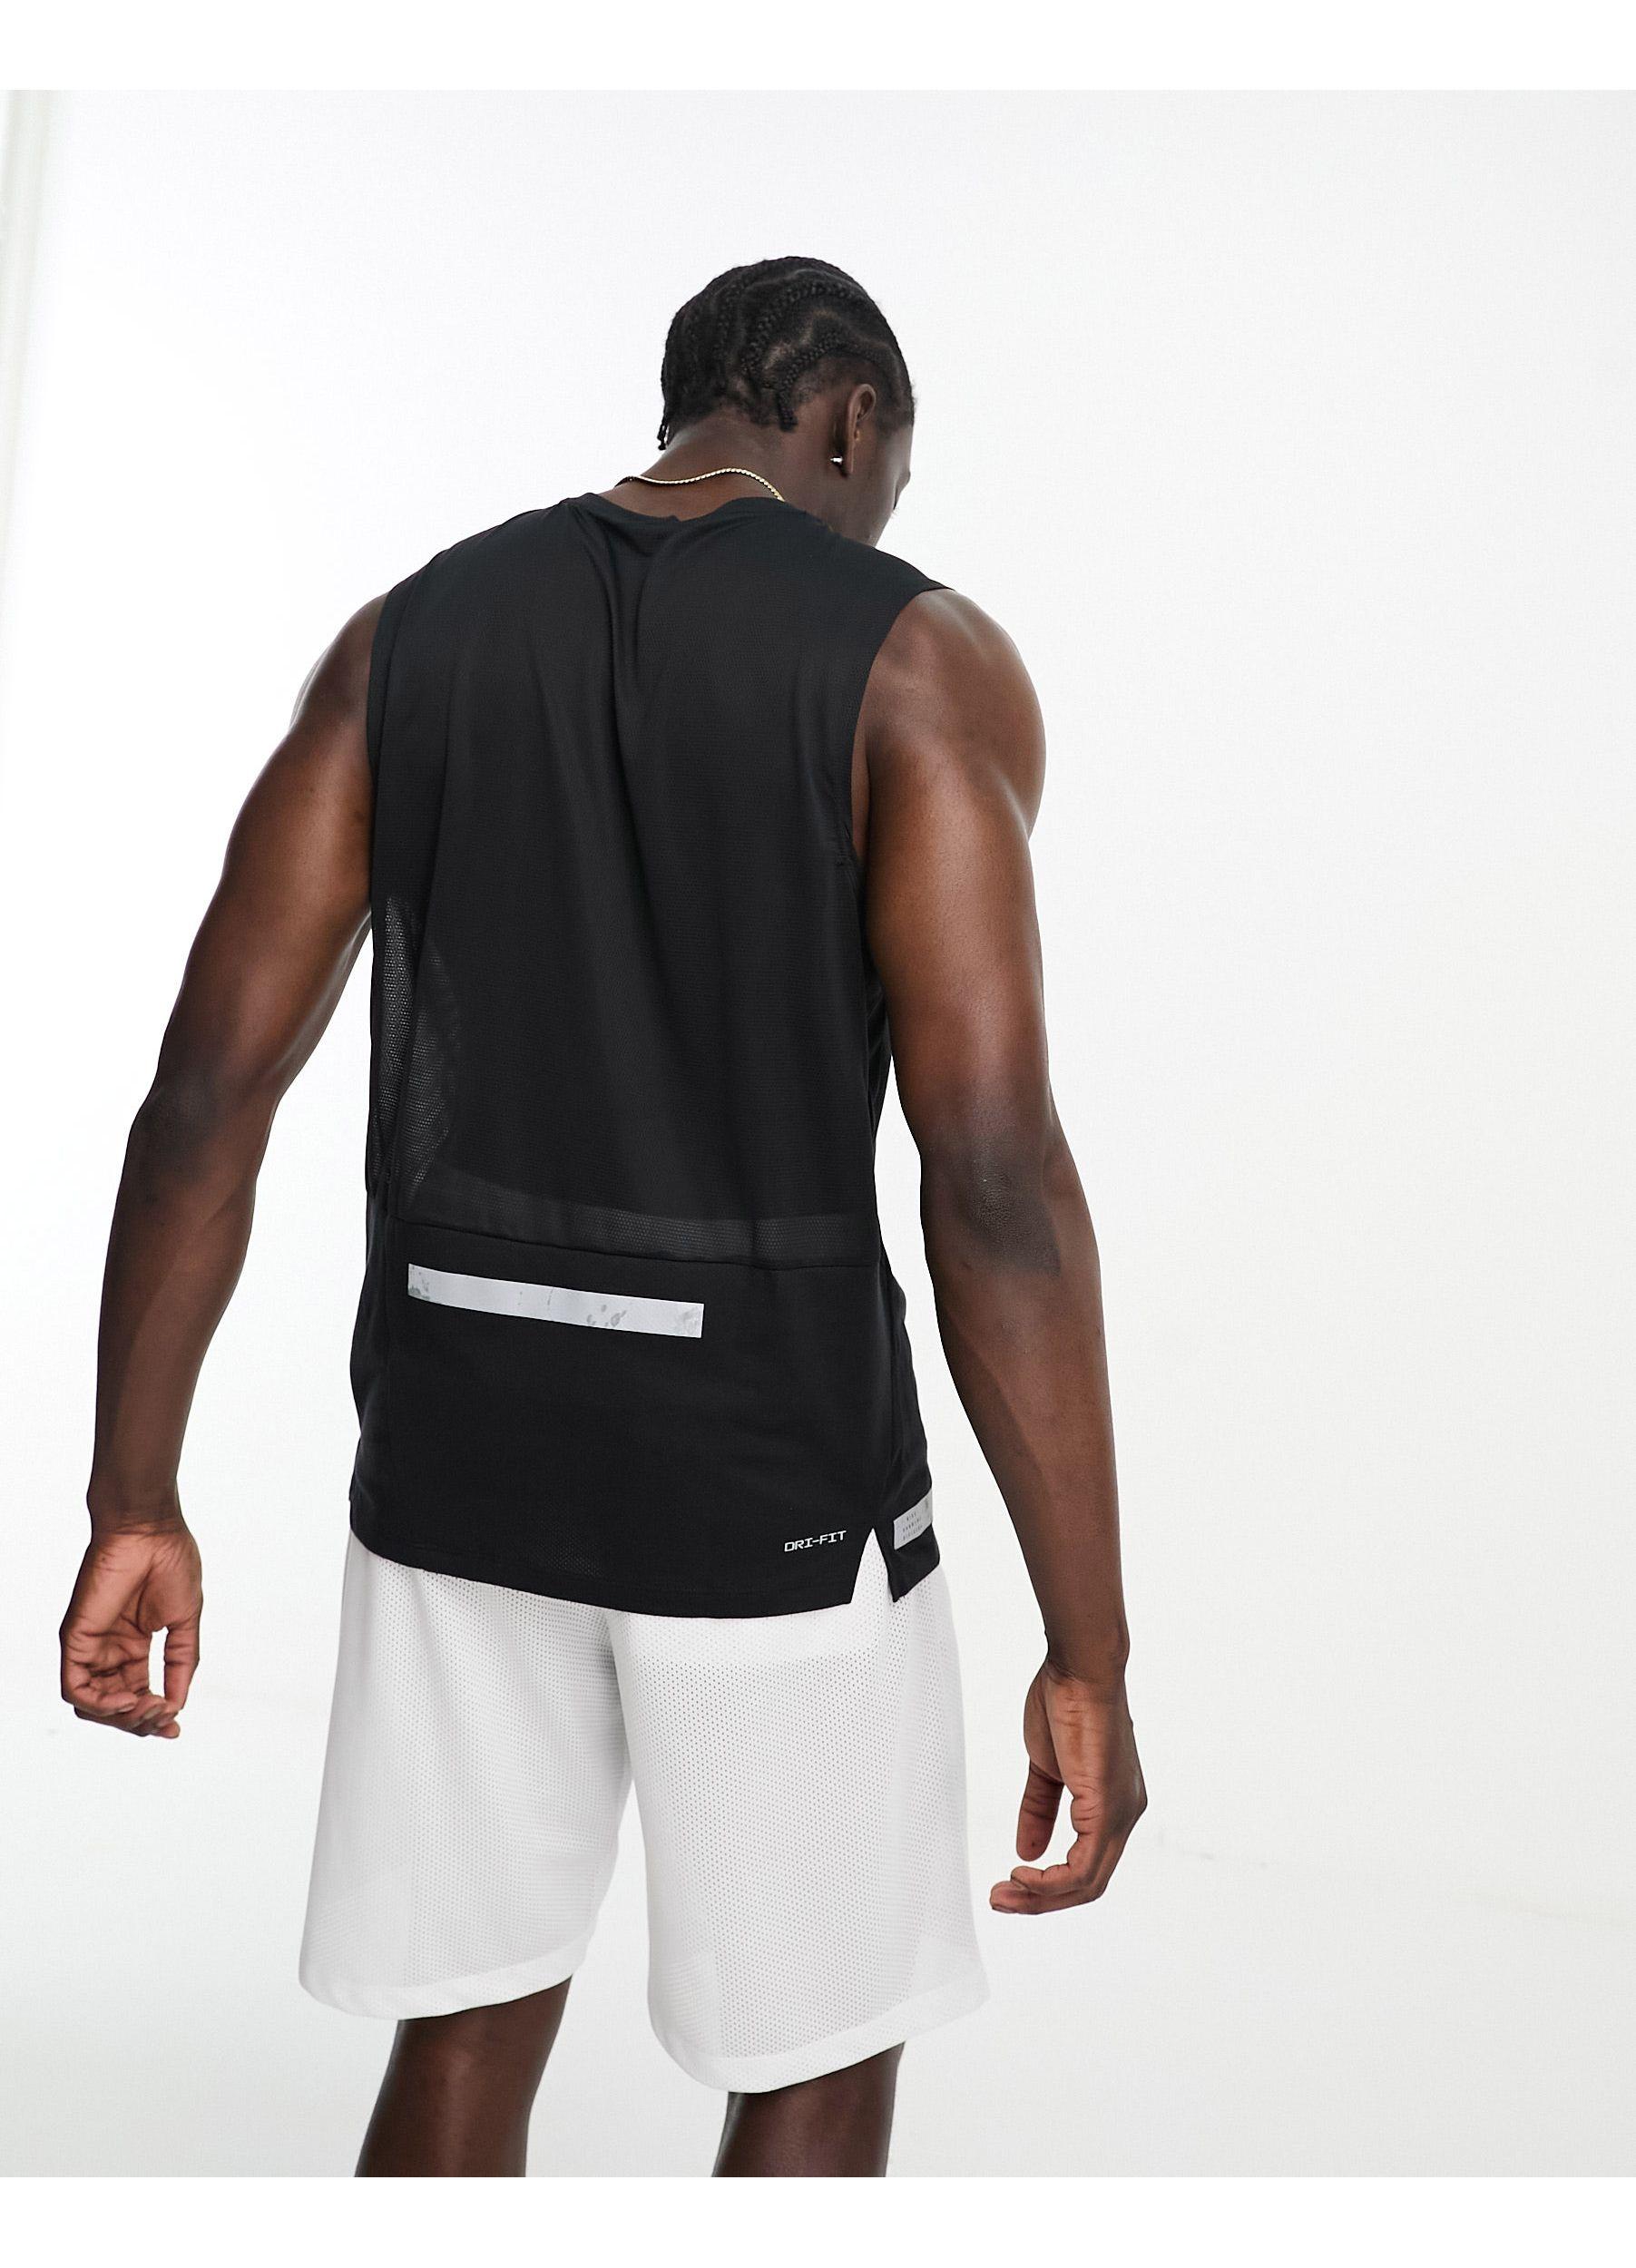 Nike Dri-fit Rise 365 Tank Top in Black for Men